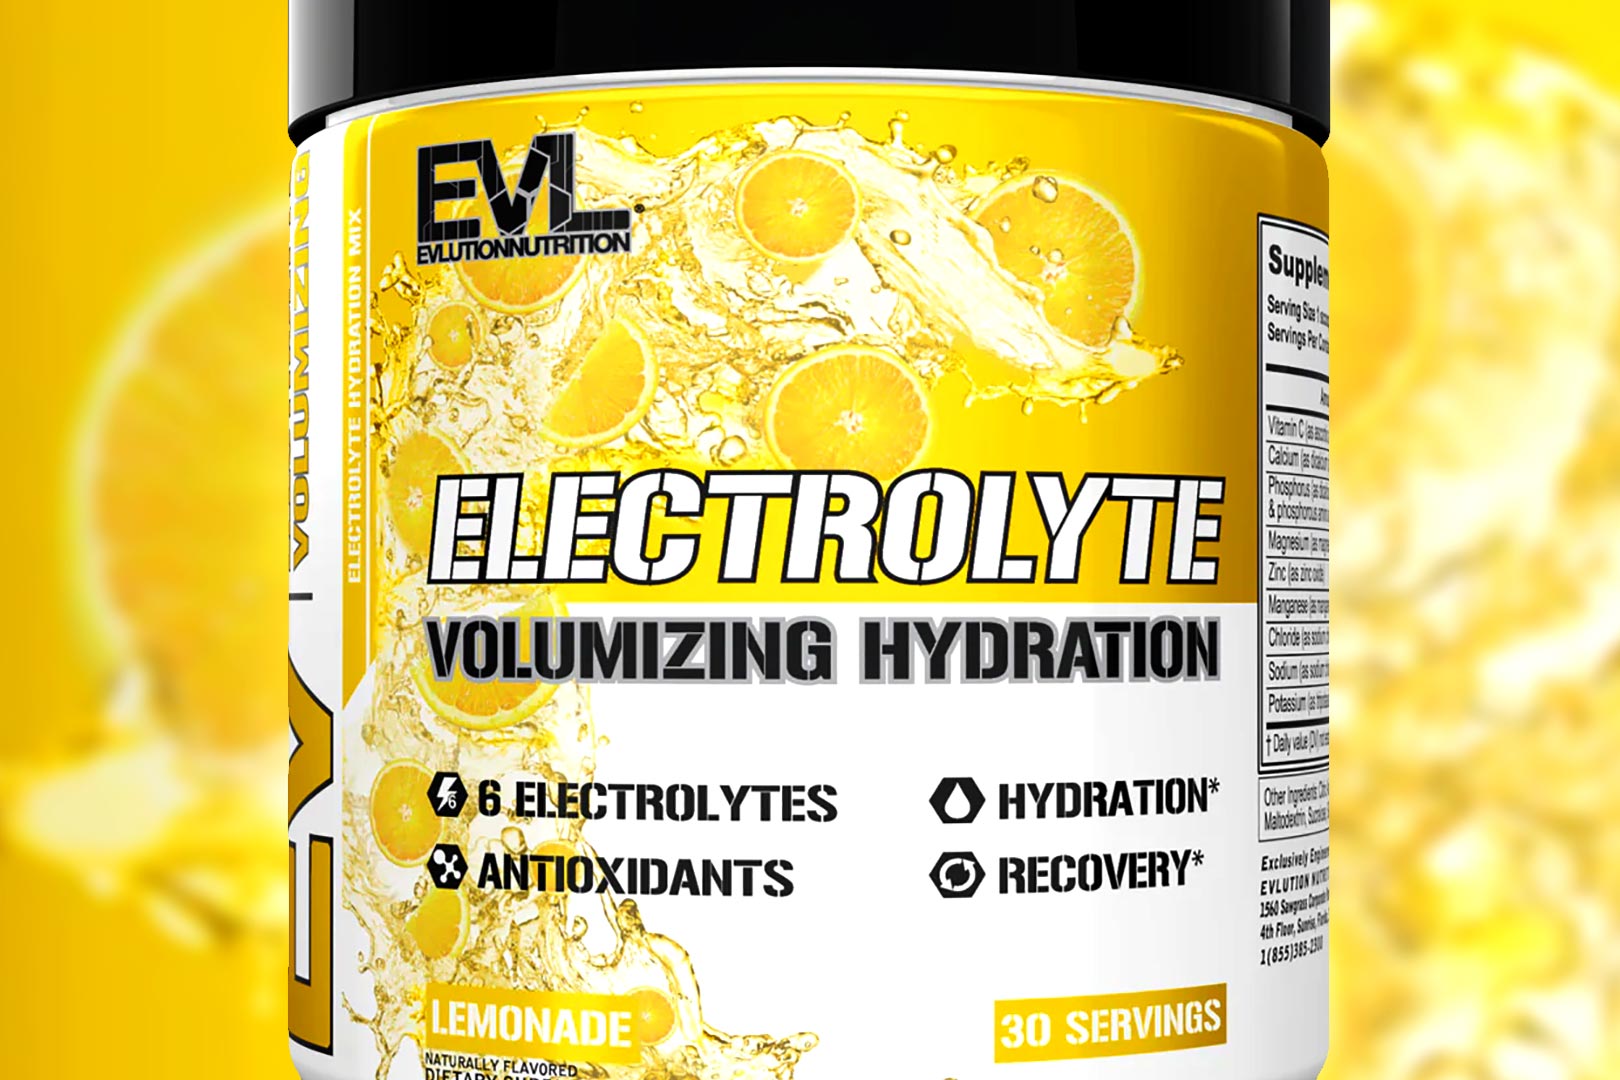 Evl Electrolyte Volumizing